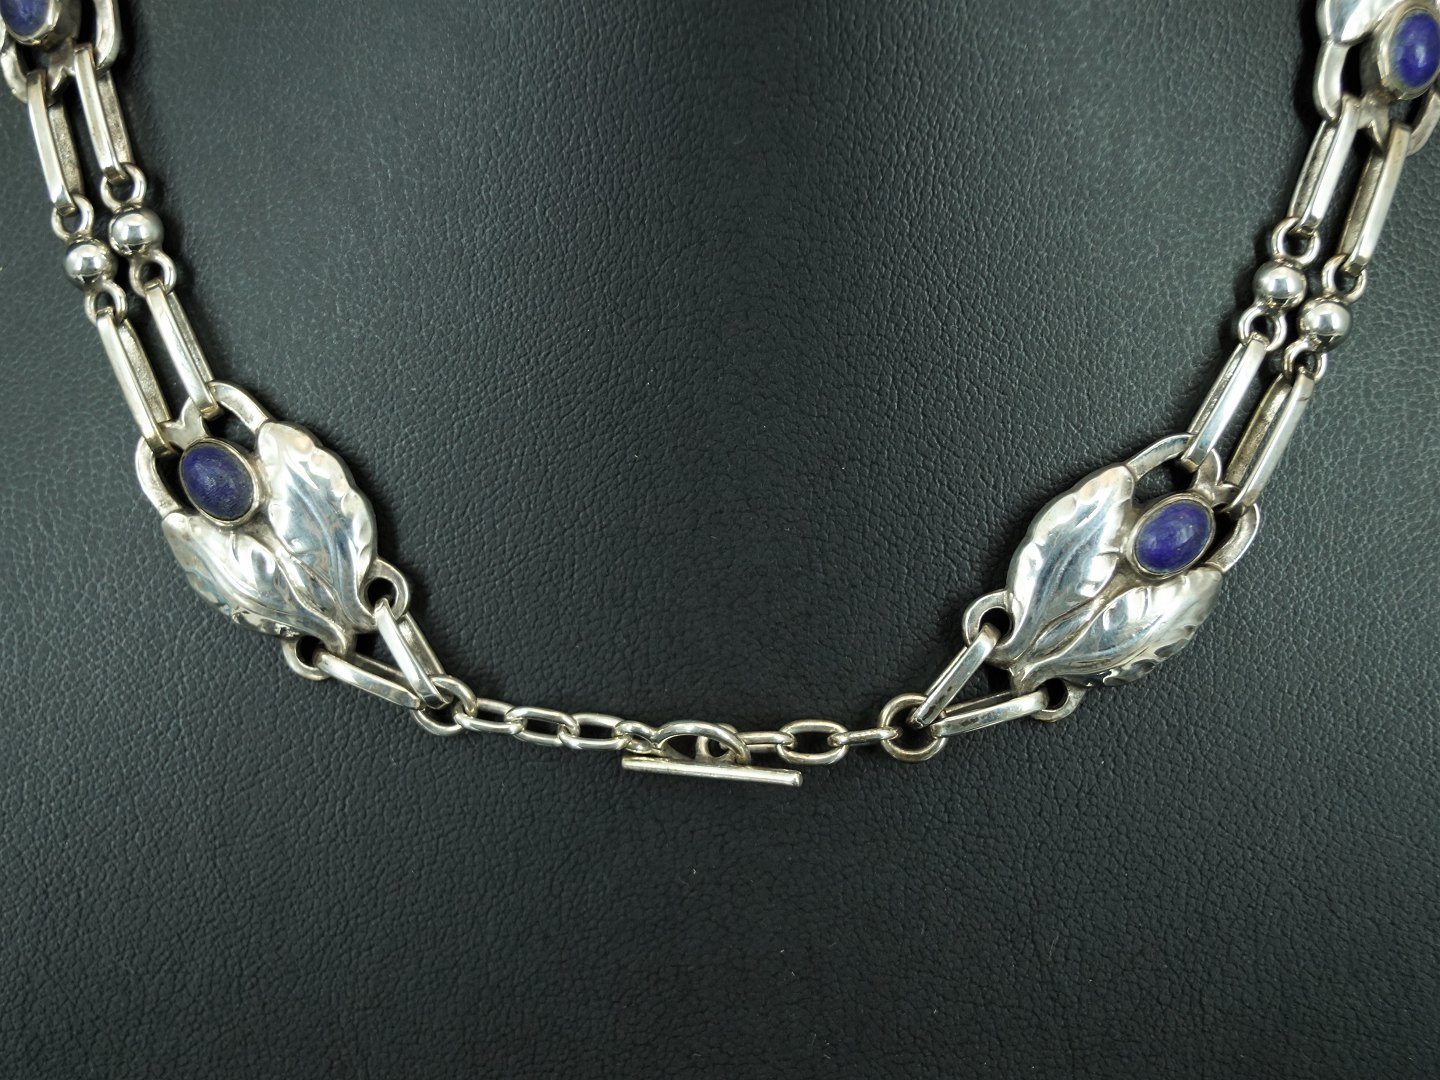 www.Antikvitet.net - Georg Jensen; Halscollier af sølv prydet med lapis lazuli